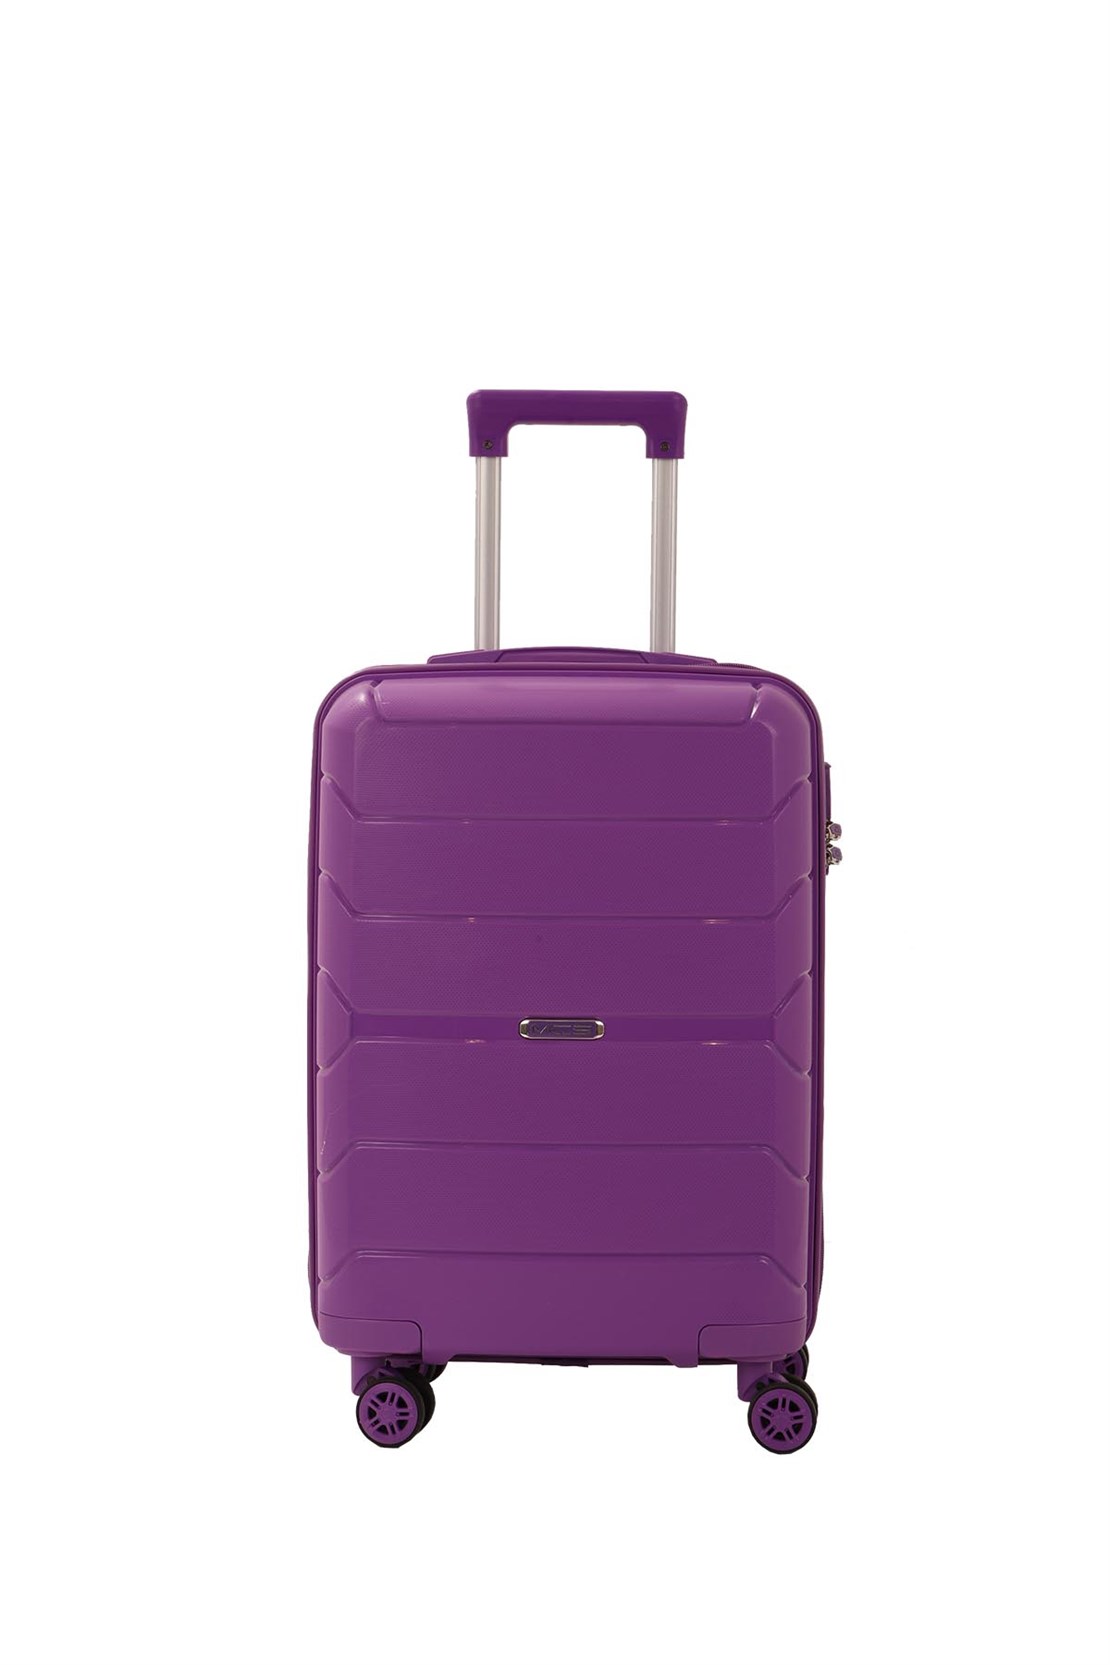 Маленький чемодан для ручьной клади из полипропилена MCS V366 S VIOLET! Для 8-10 кг! - 1